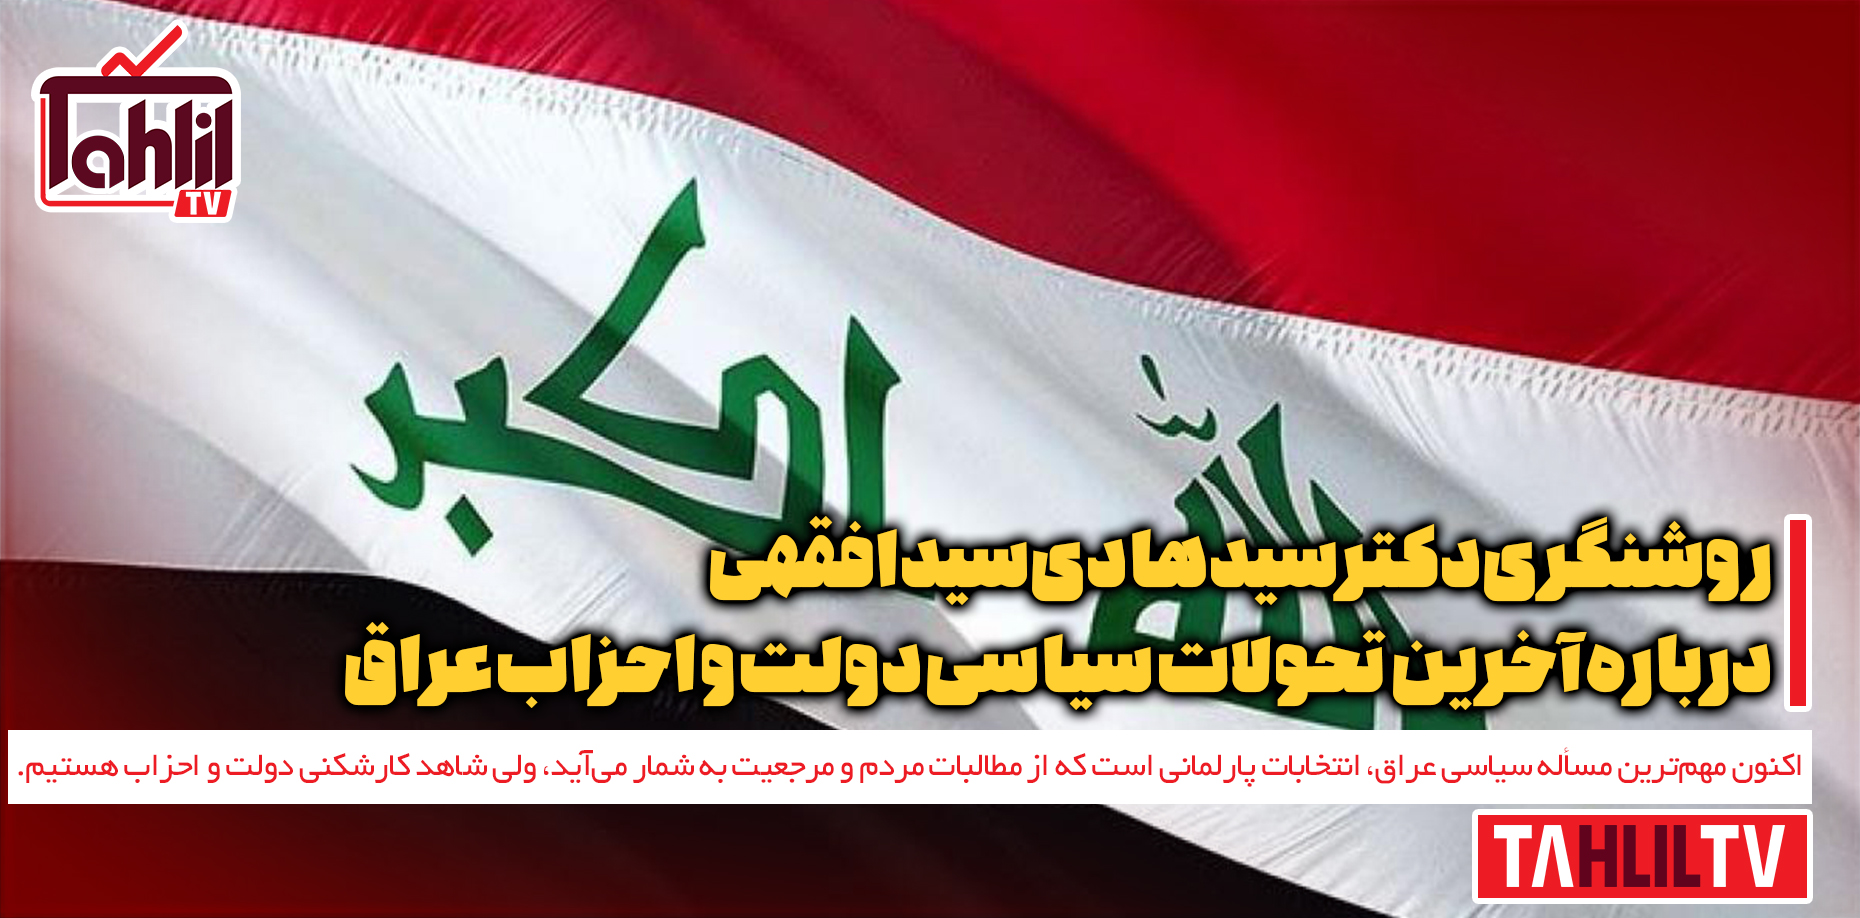 آخرین تحولات سیاسی دولت و احزاب عراق